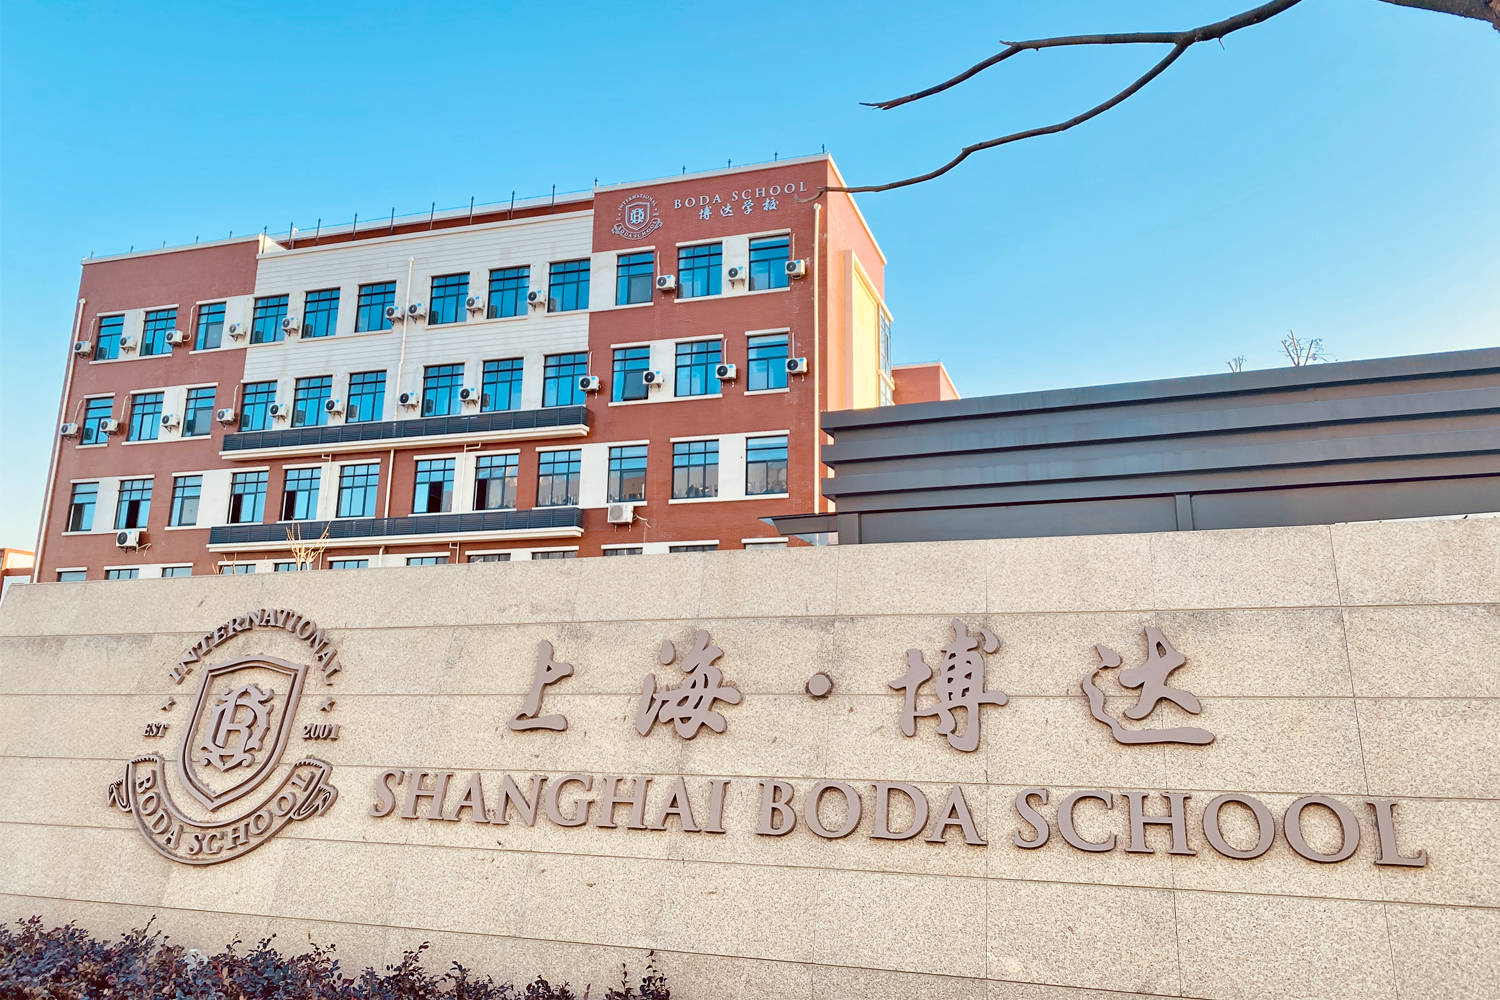 上海博达艺术根据教育部《高中阶段教育普及攻坚计划》提出的最新目标